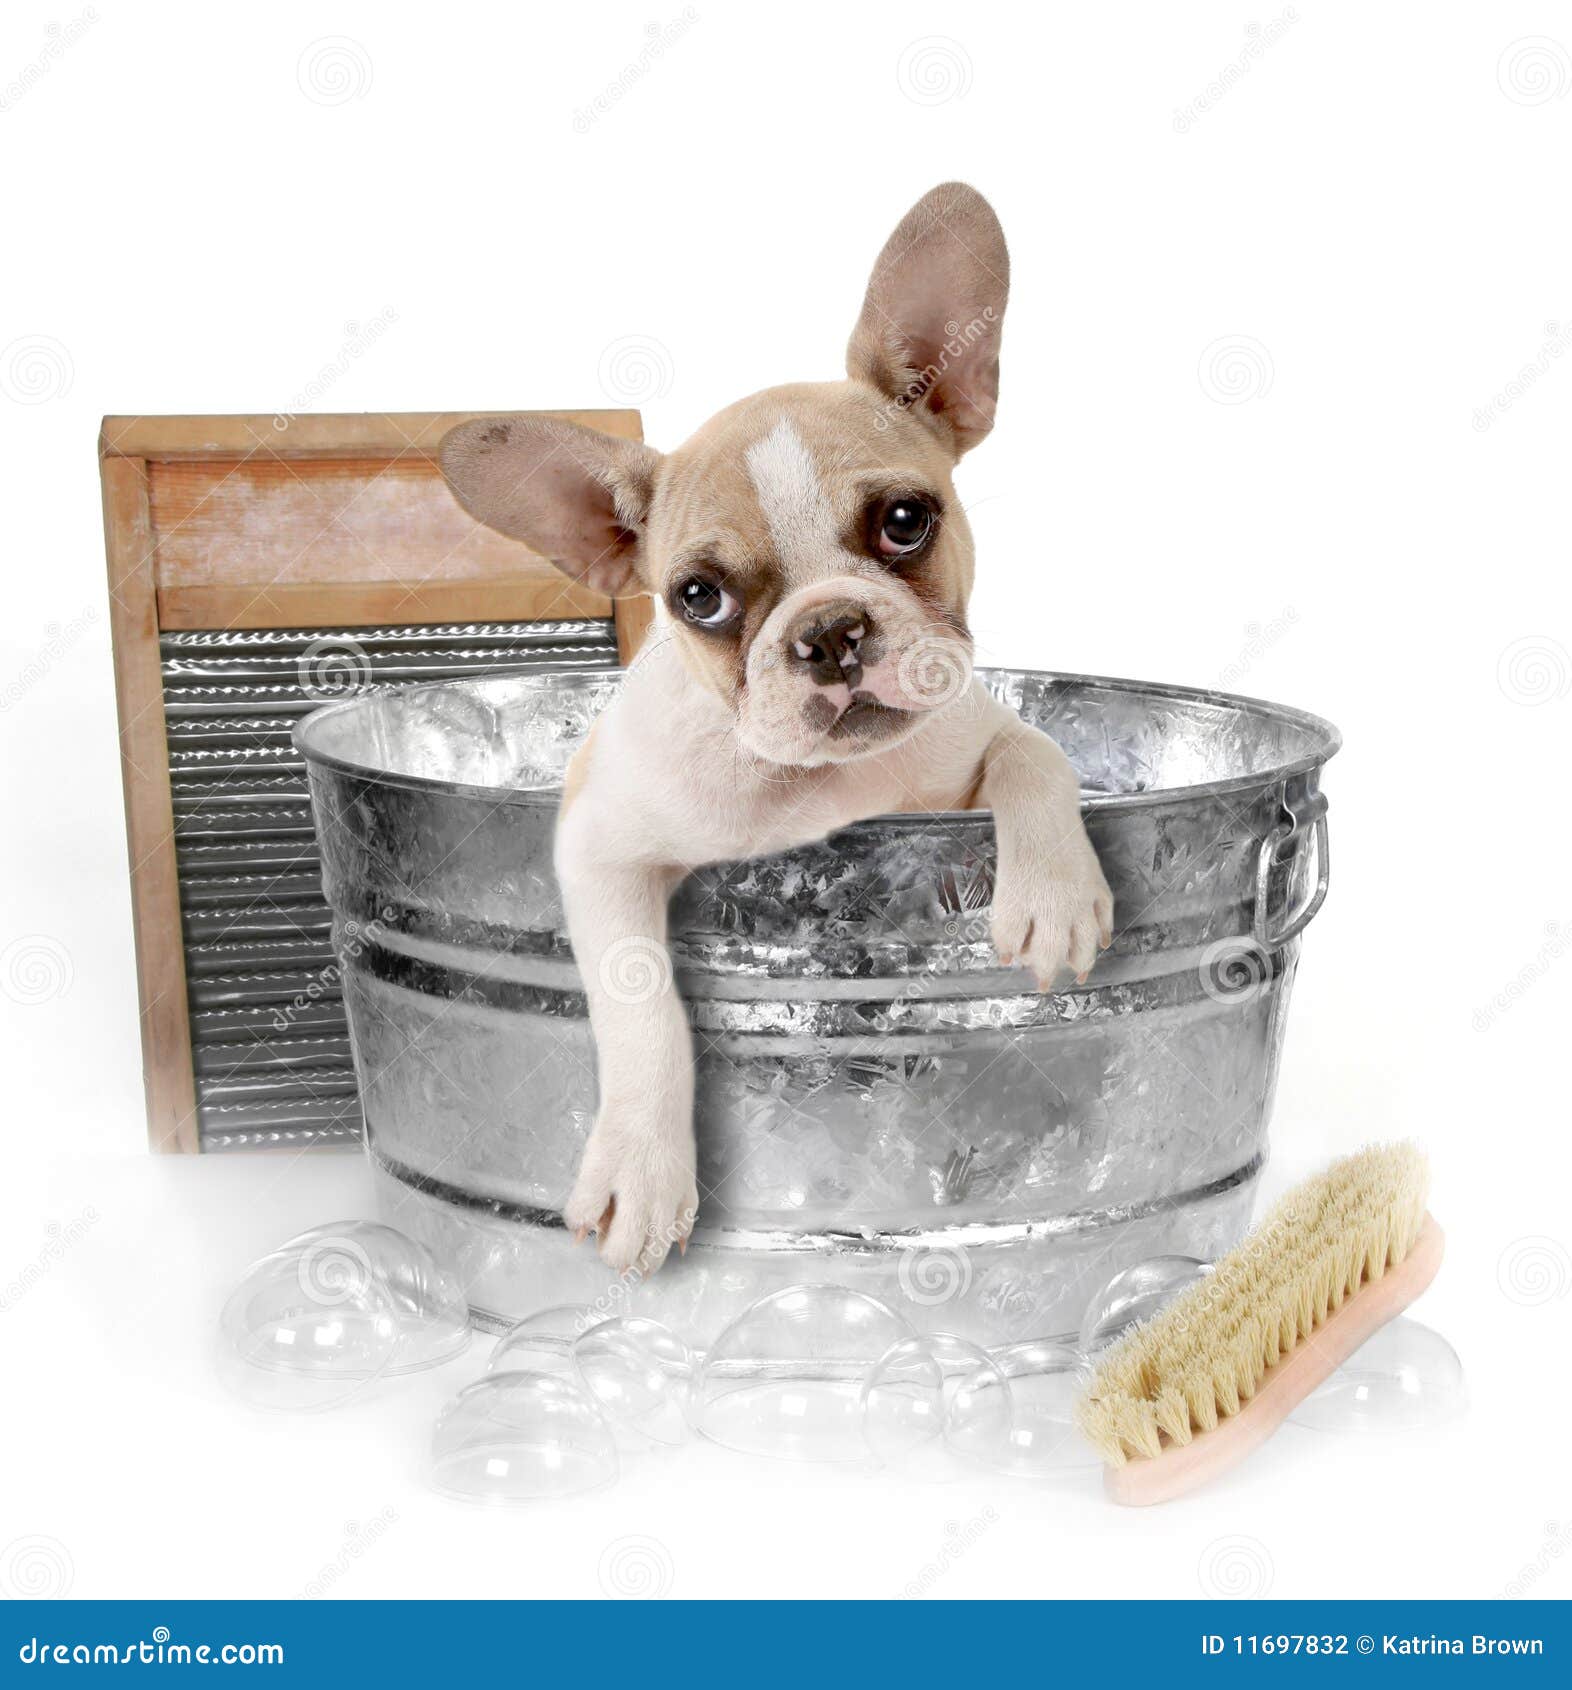 Dog Getting A Bath In A Washtub In Studio Stock Photo